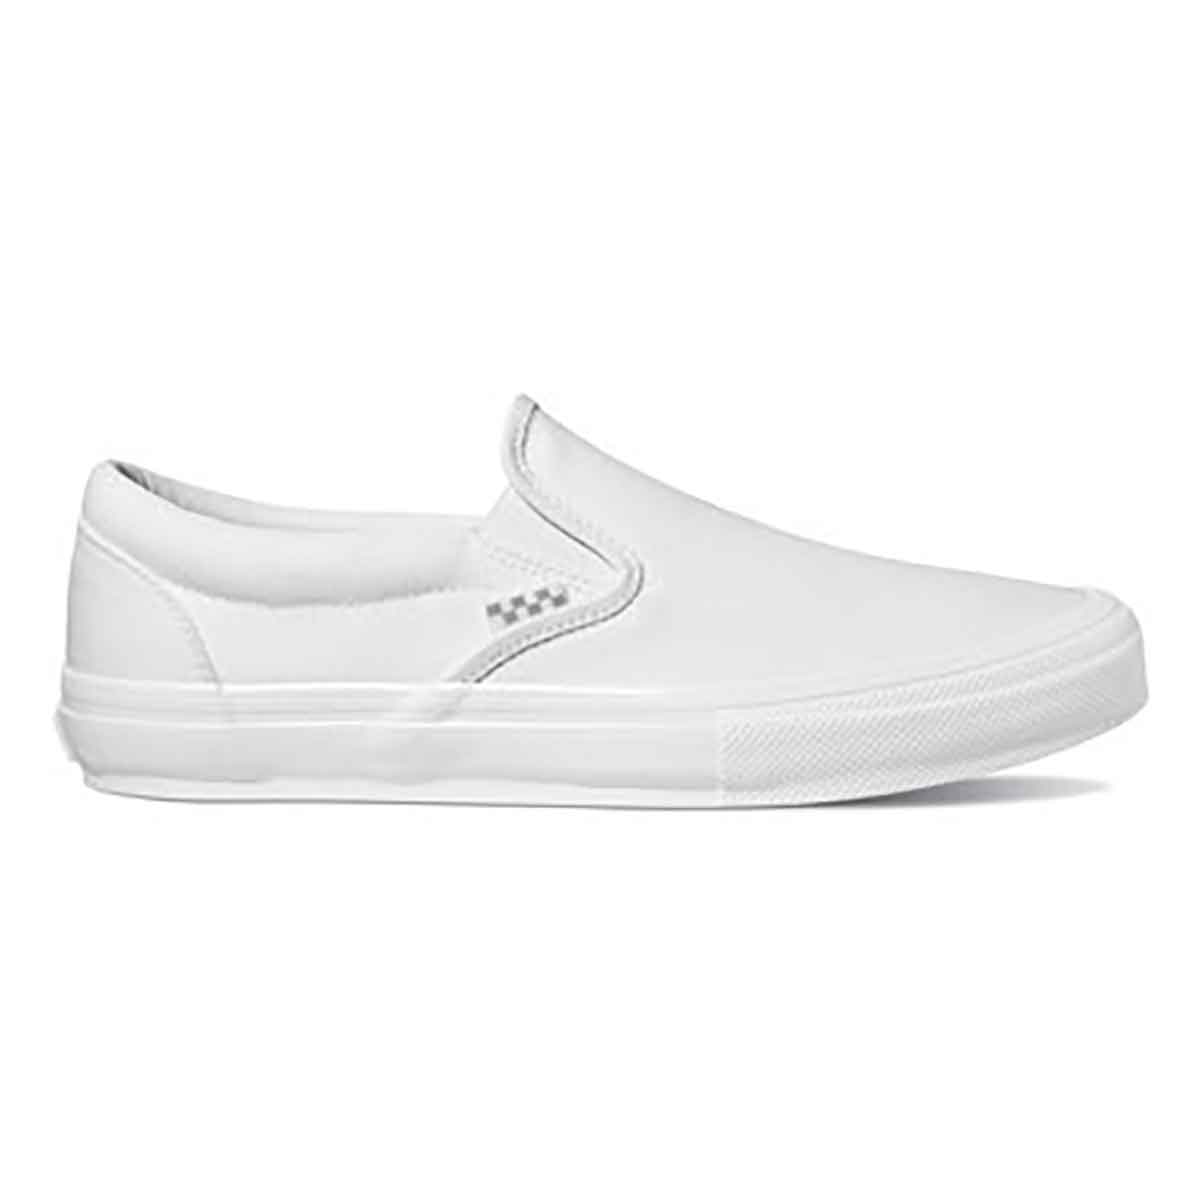 Vans Skate Slip On Pro Shoes - True White